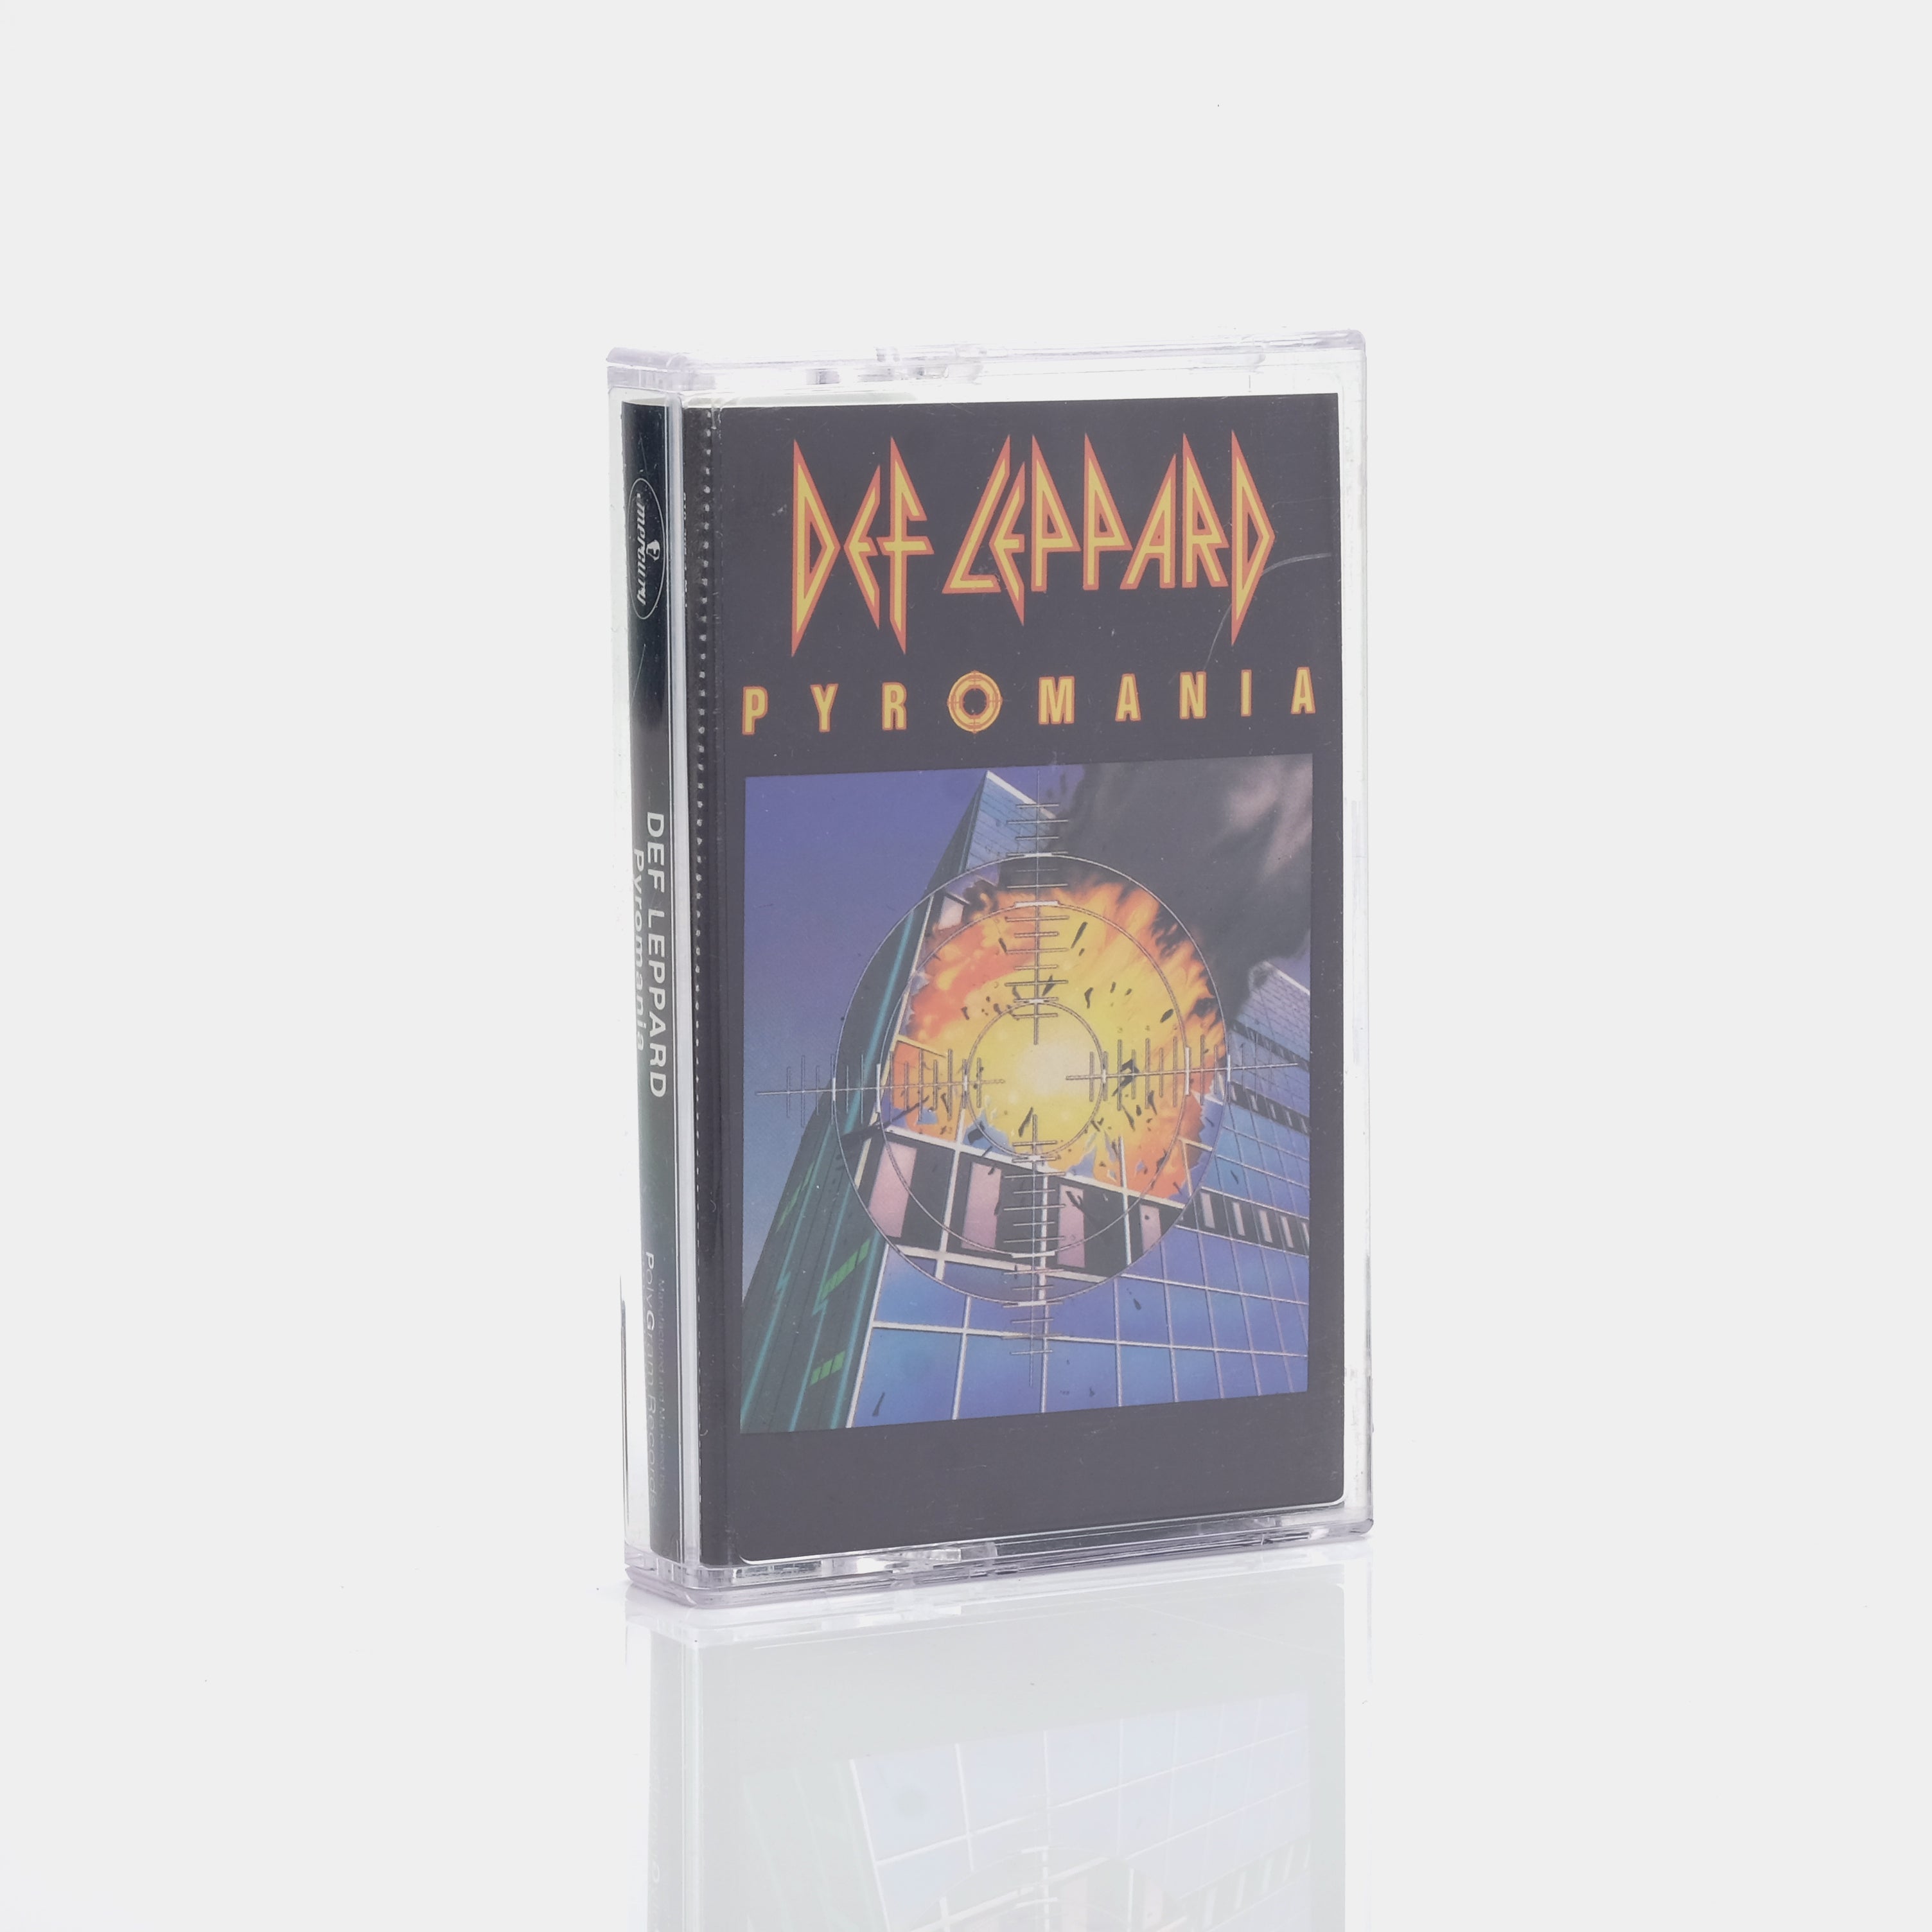 Def Leppard - Pyromania Cassette Tape